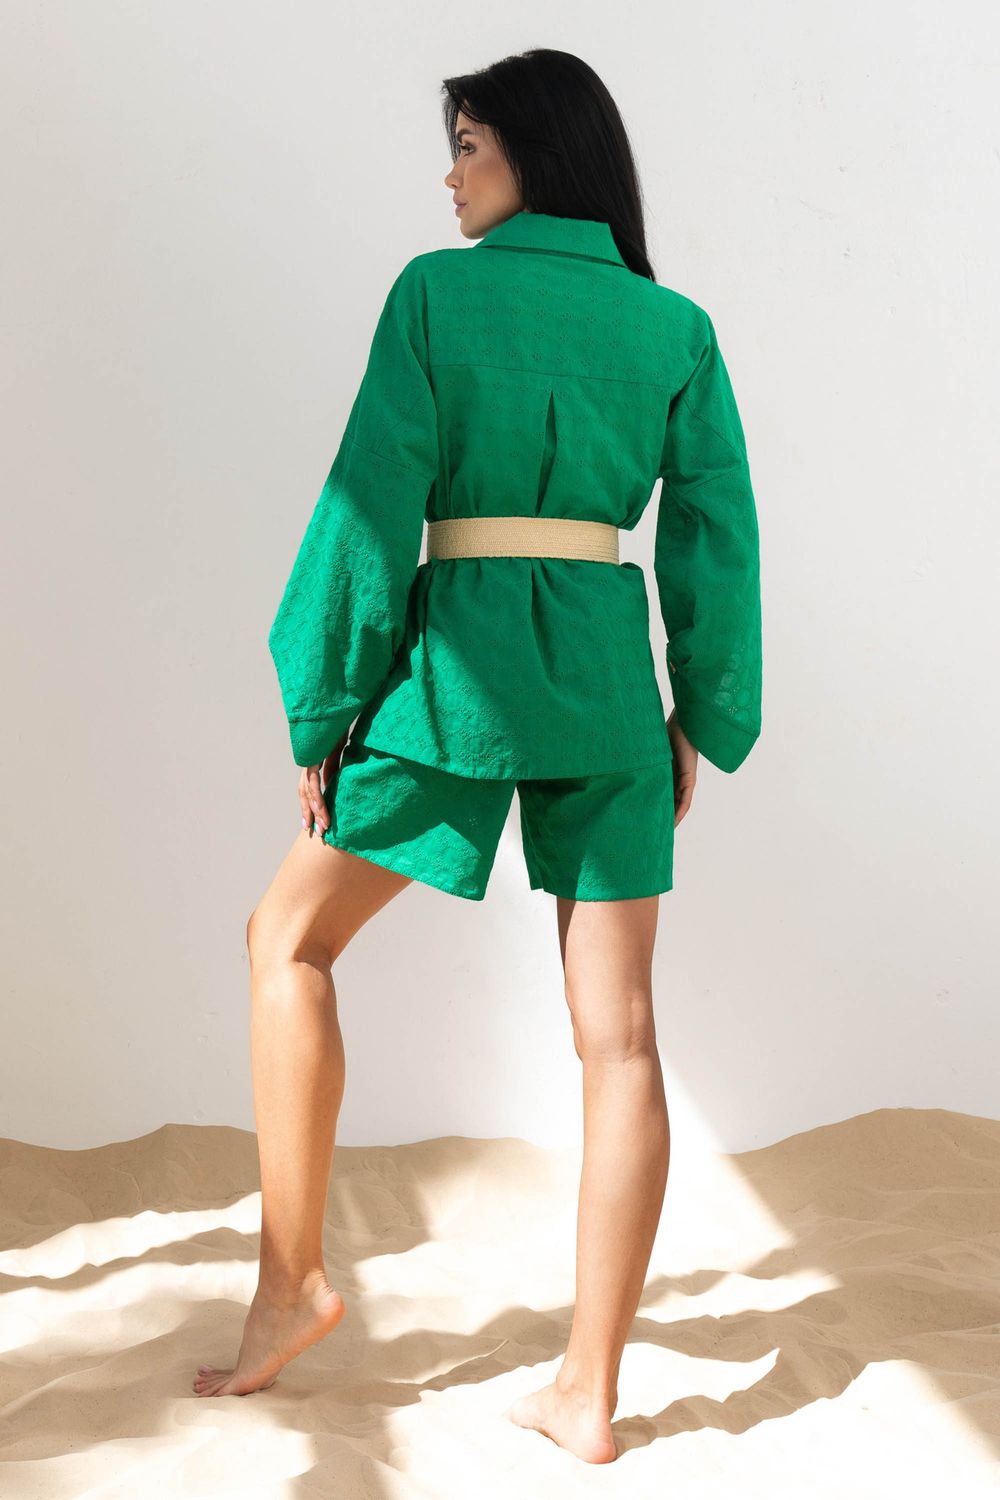 Літній жіночий костюм з прошви зеленого кольору - фото